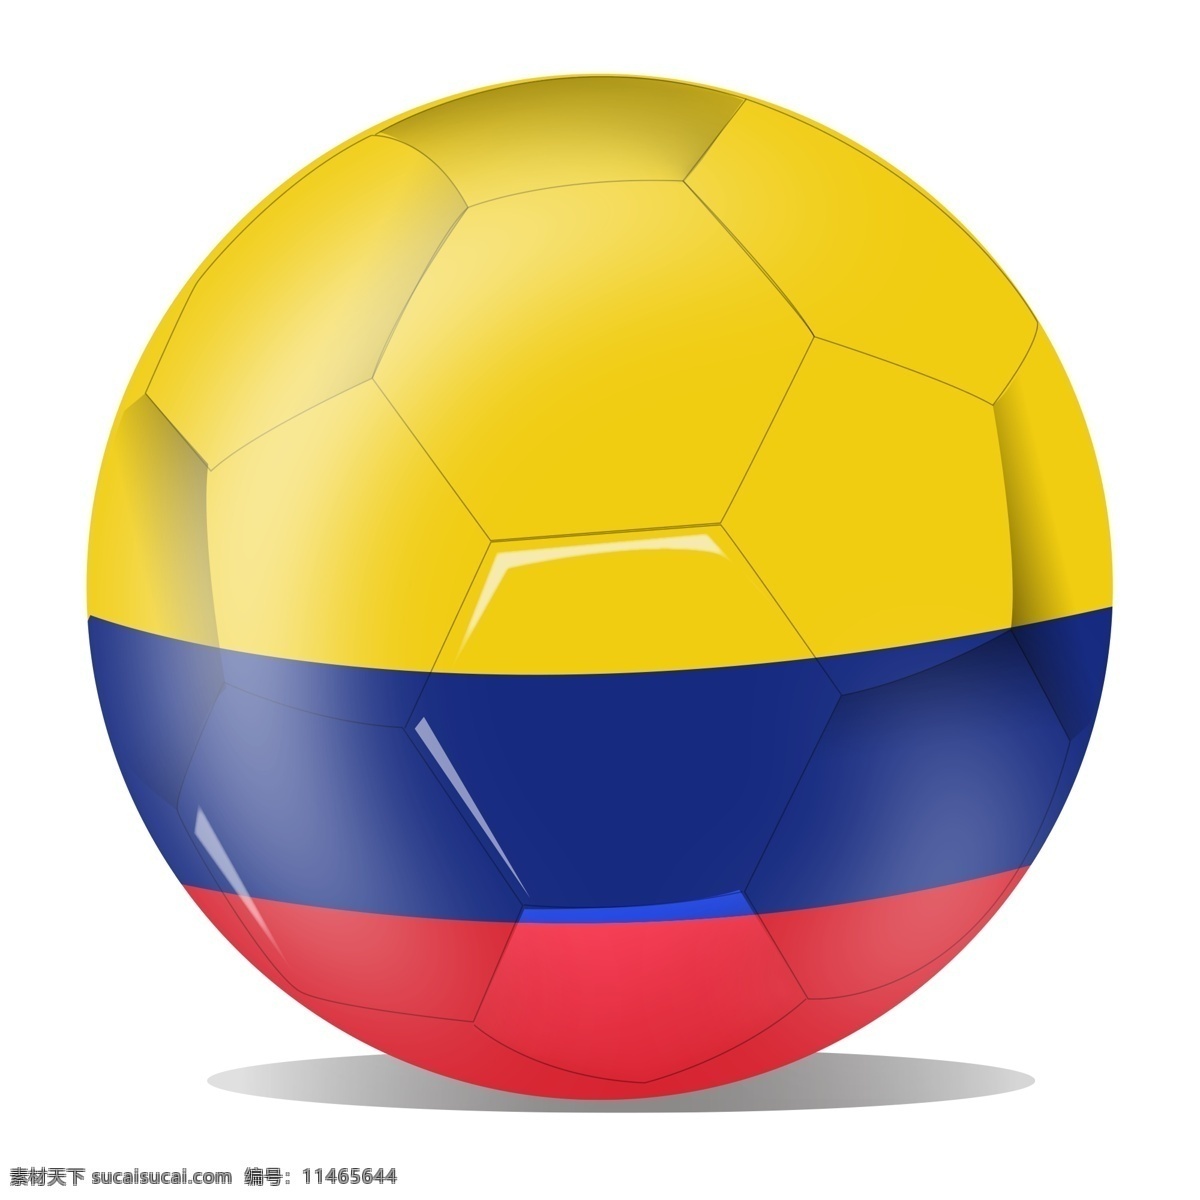 红 黄蓝 足球 免 抠 图 踢球 运动项目 运动健康 身心健康 纹理足球 蓝色皮球 黄色 卡通足球 红色